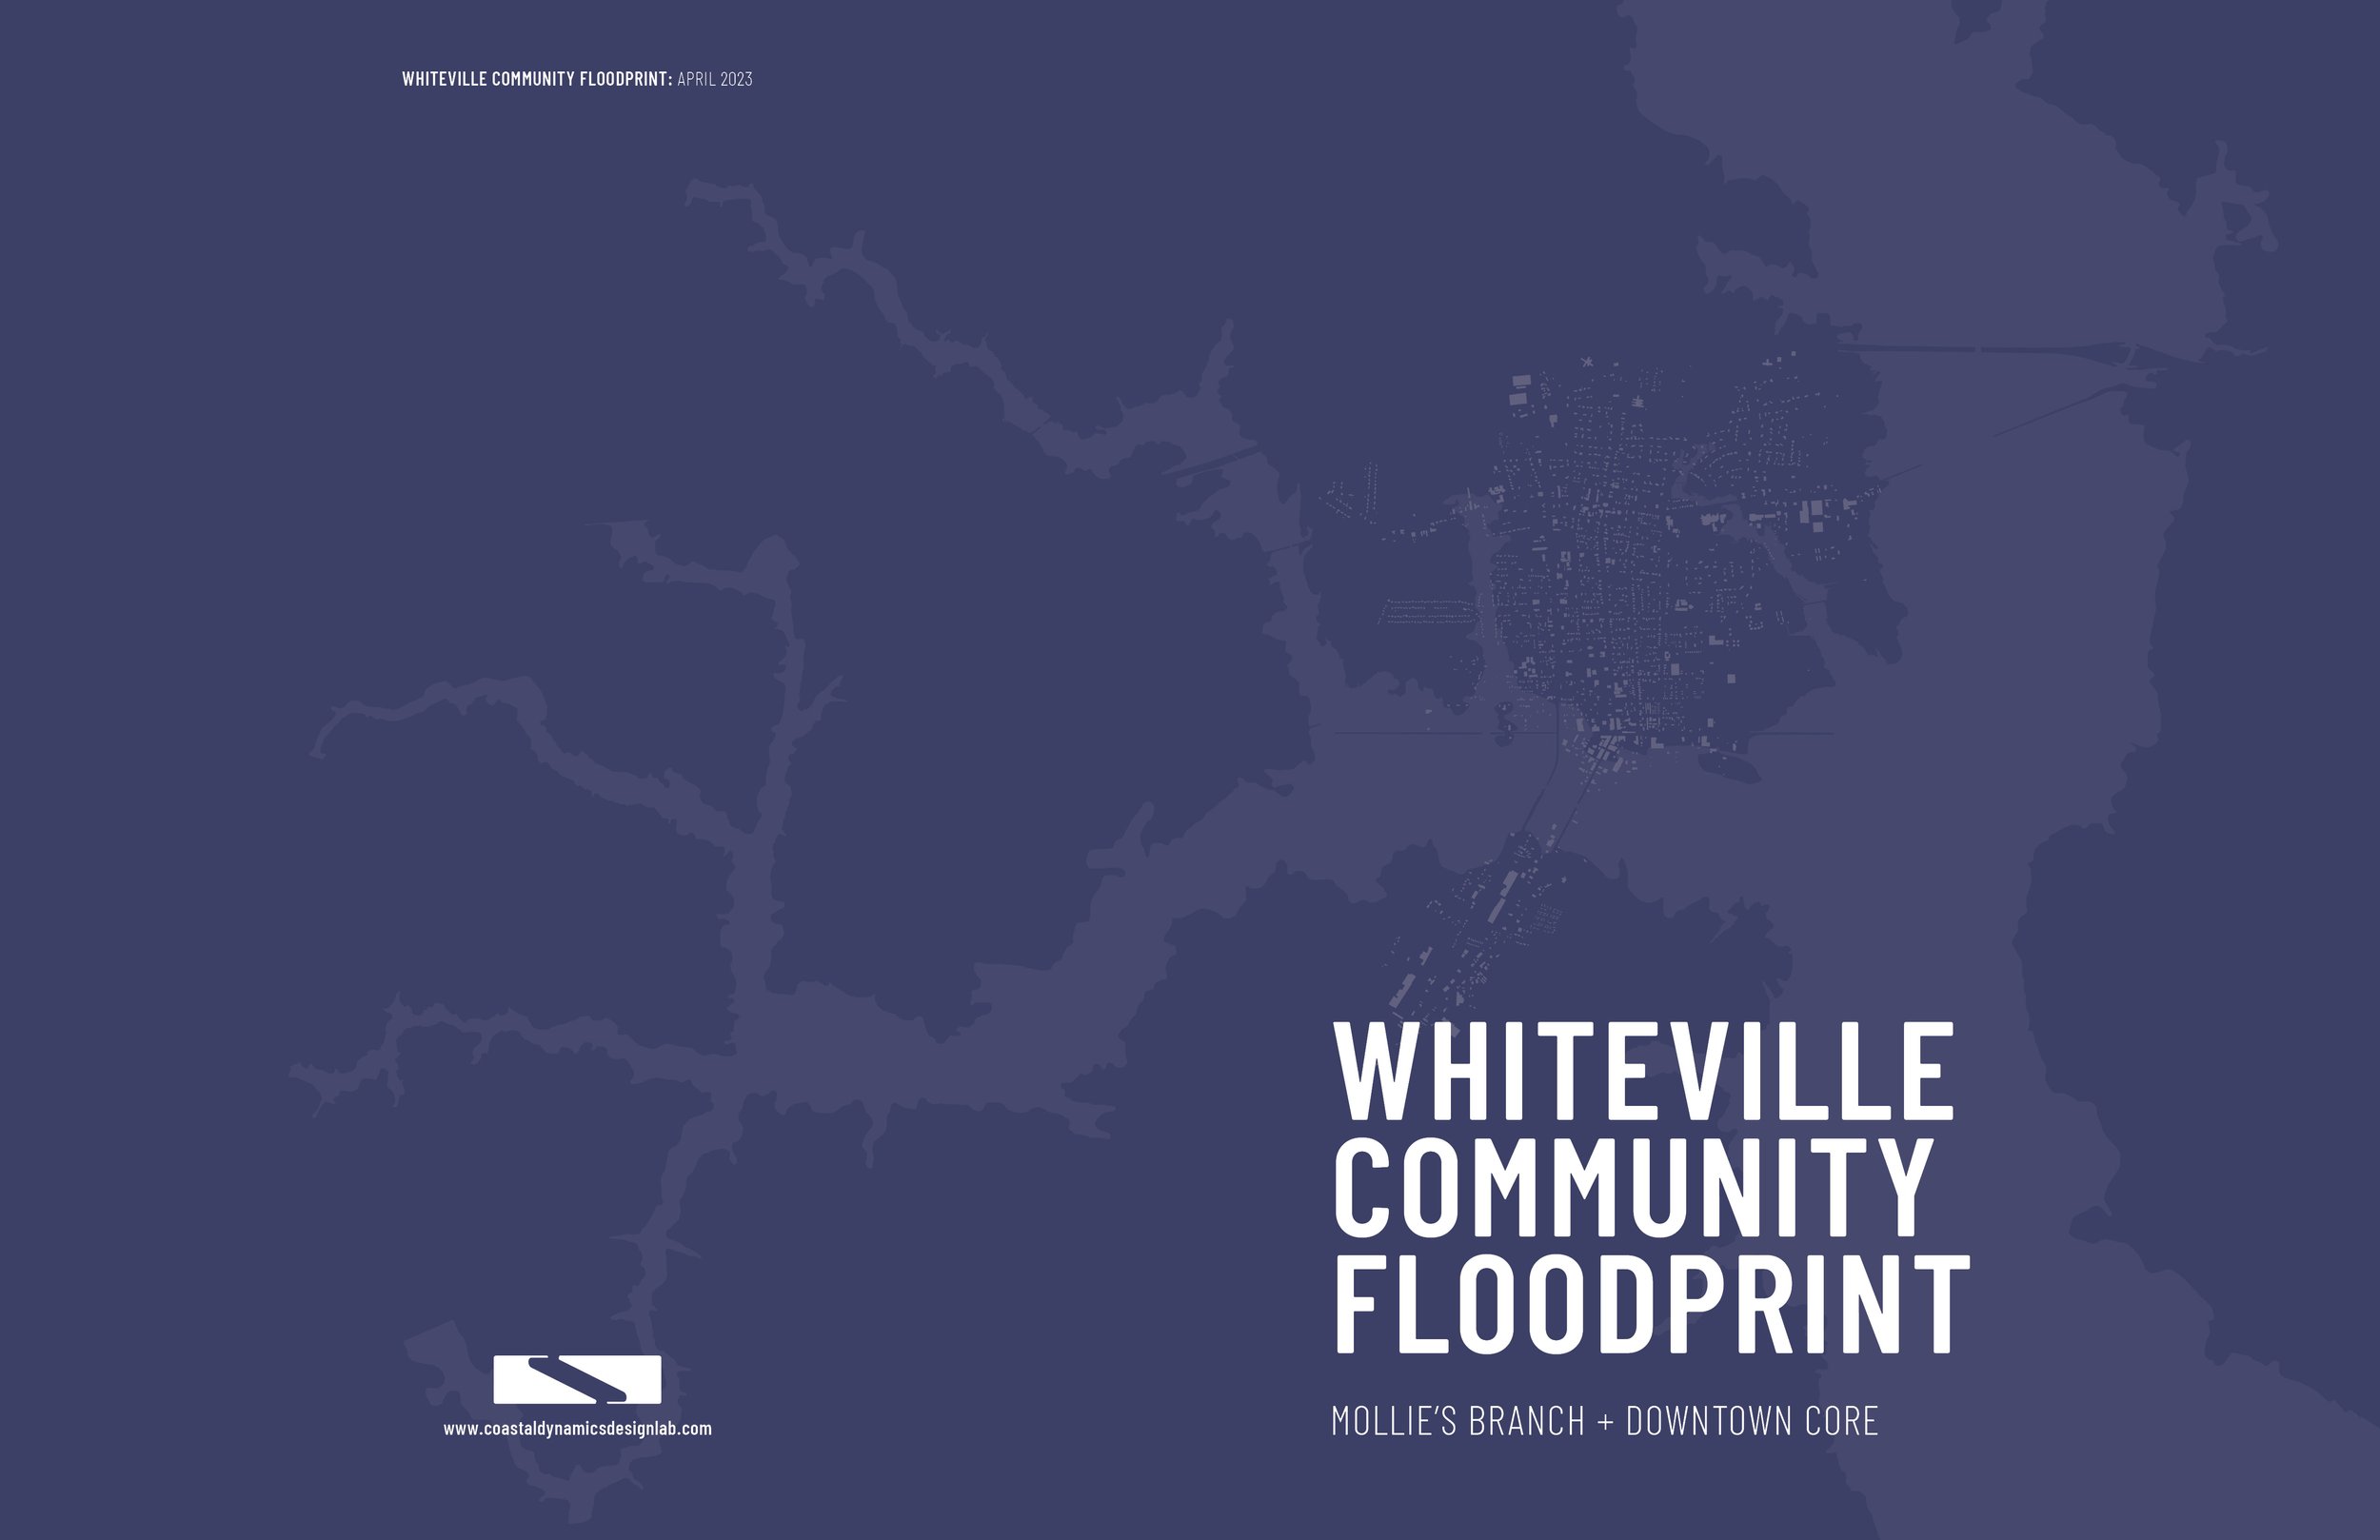 Whiteville Floodprint_images_.jpg